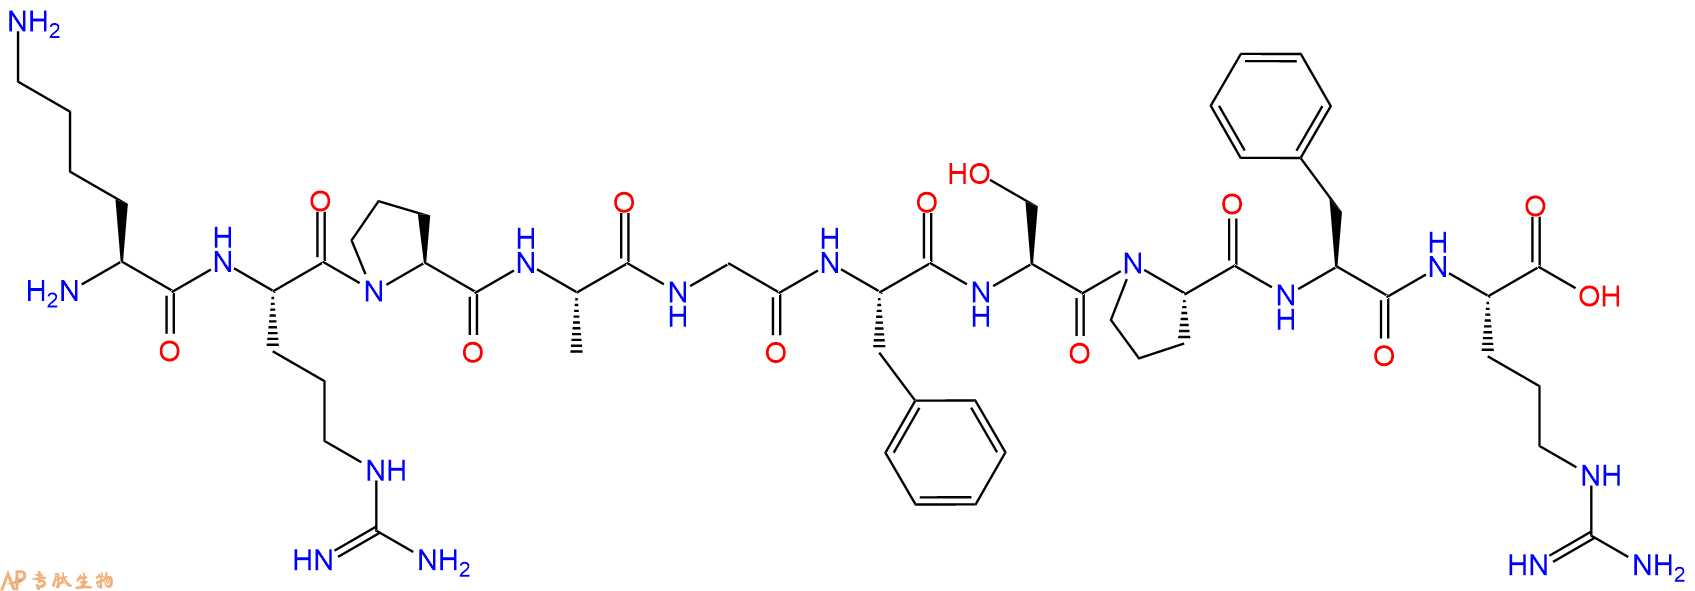 专肽生物产品LYS-ARG-PRO-ALA-GLY-PHE-SER-PRO-PHE-ARG: KRPAGFSPF103545-18-2